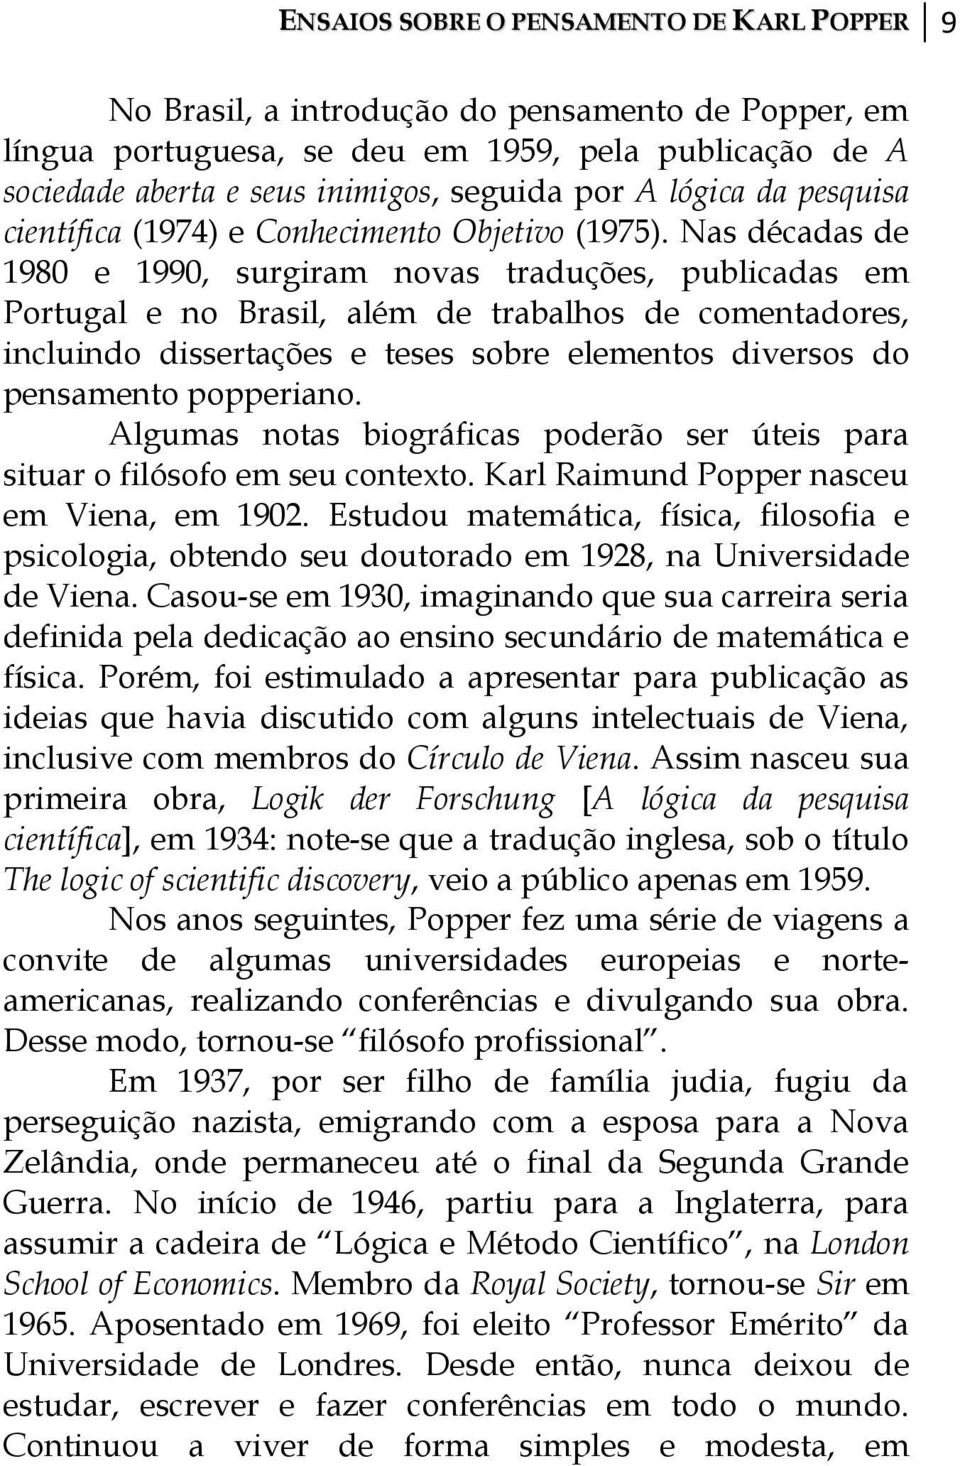 Nas décadas de 1980 e 1990, surgiram novas traduções, publicadas em Portugal e no Brasil, além de trabalhos de comentadores, incluindo dissertações e teses sobre elementos diversos do pensamento